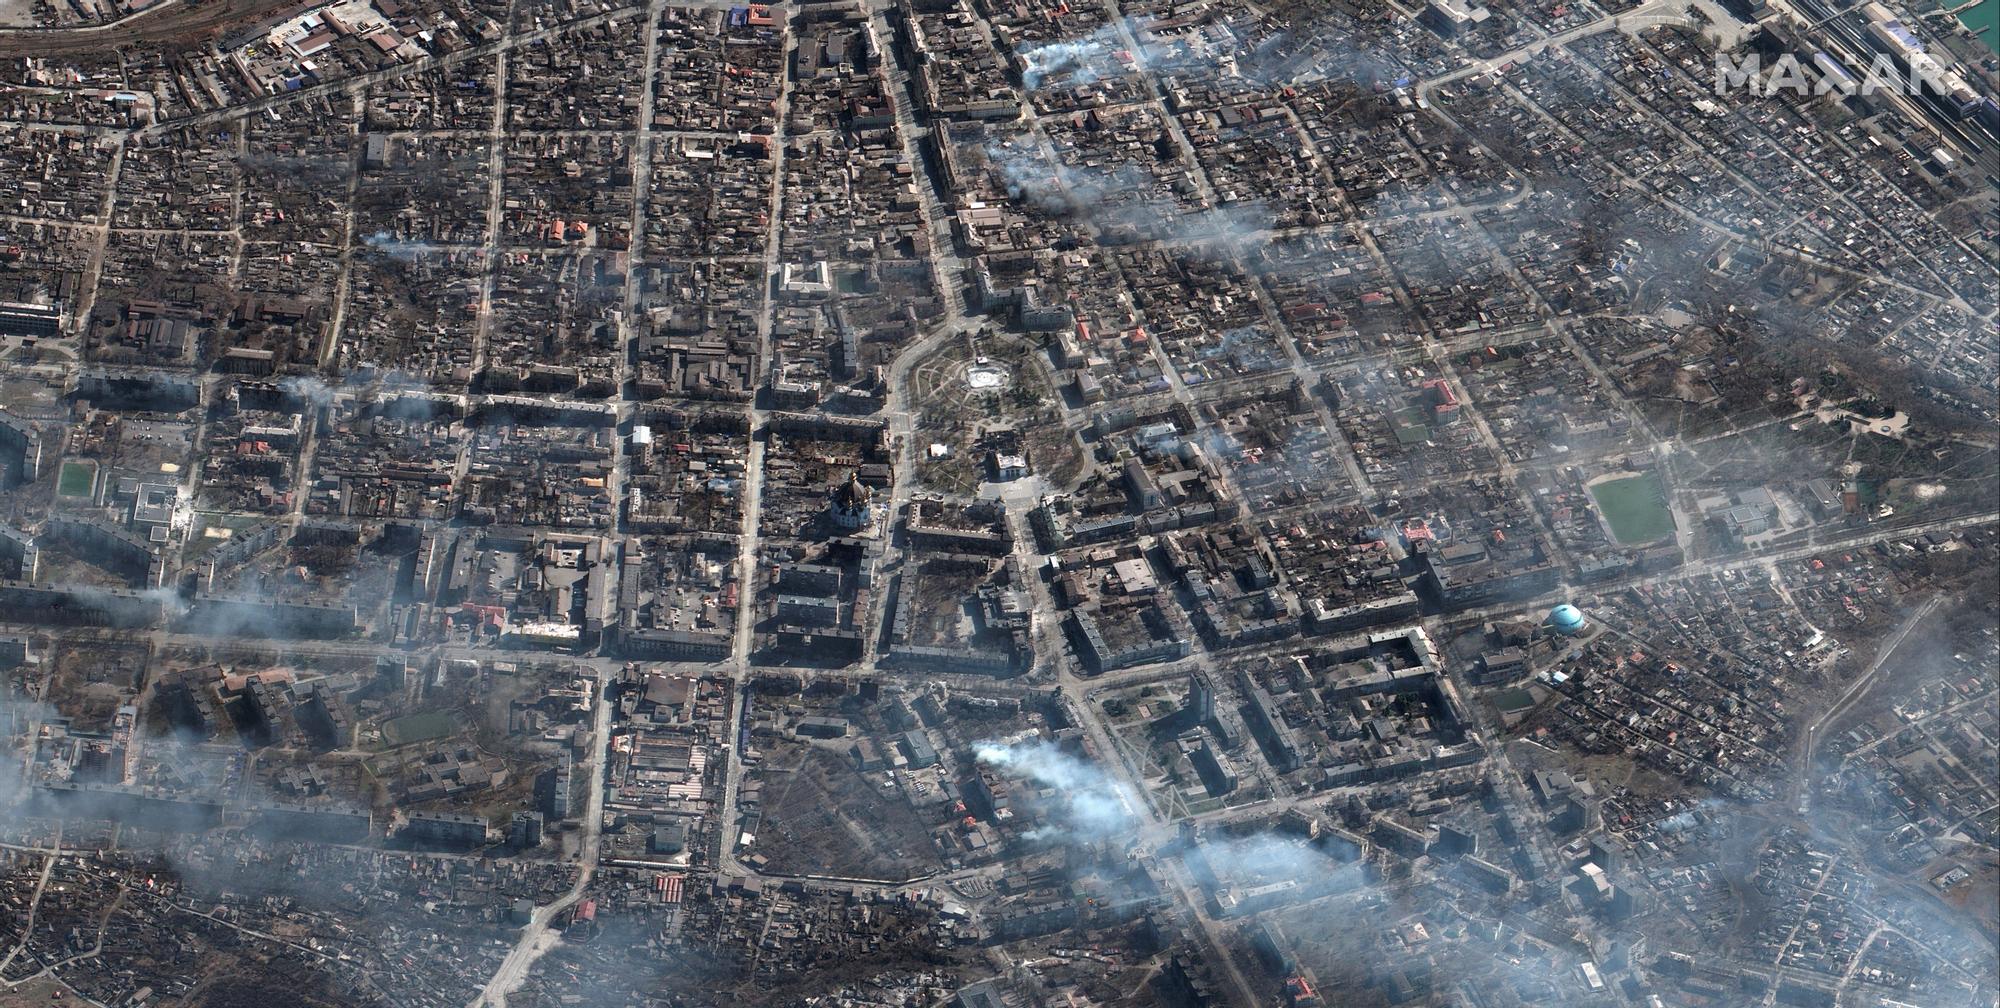 Imagen satélite de la ciudad de Mariúpol bombardeada.